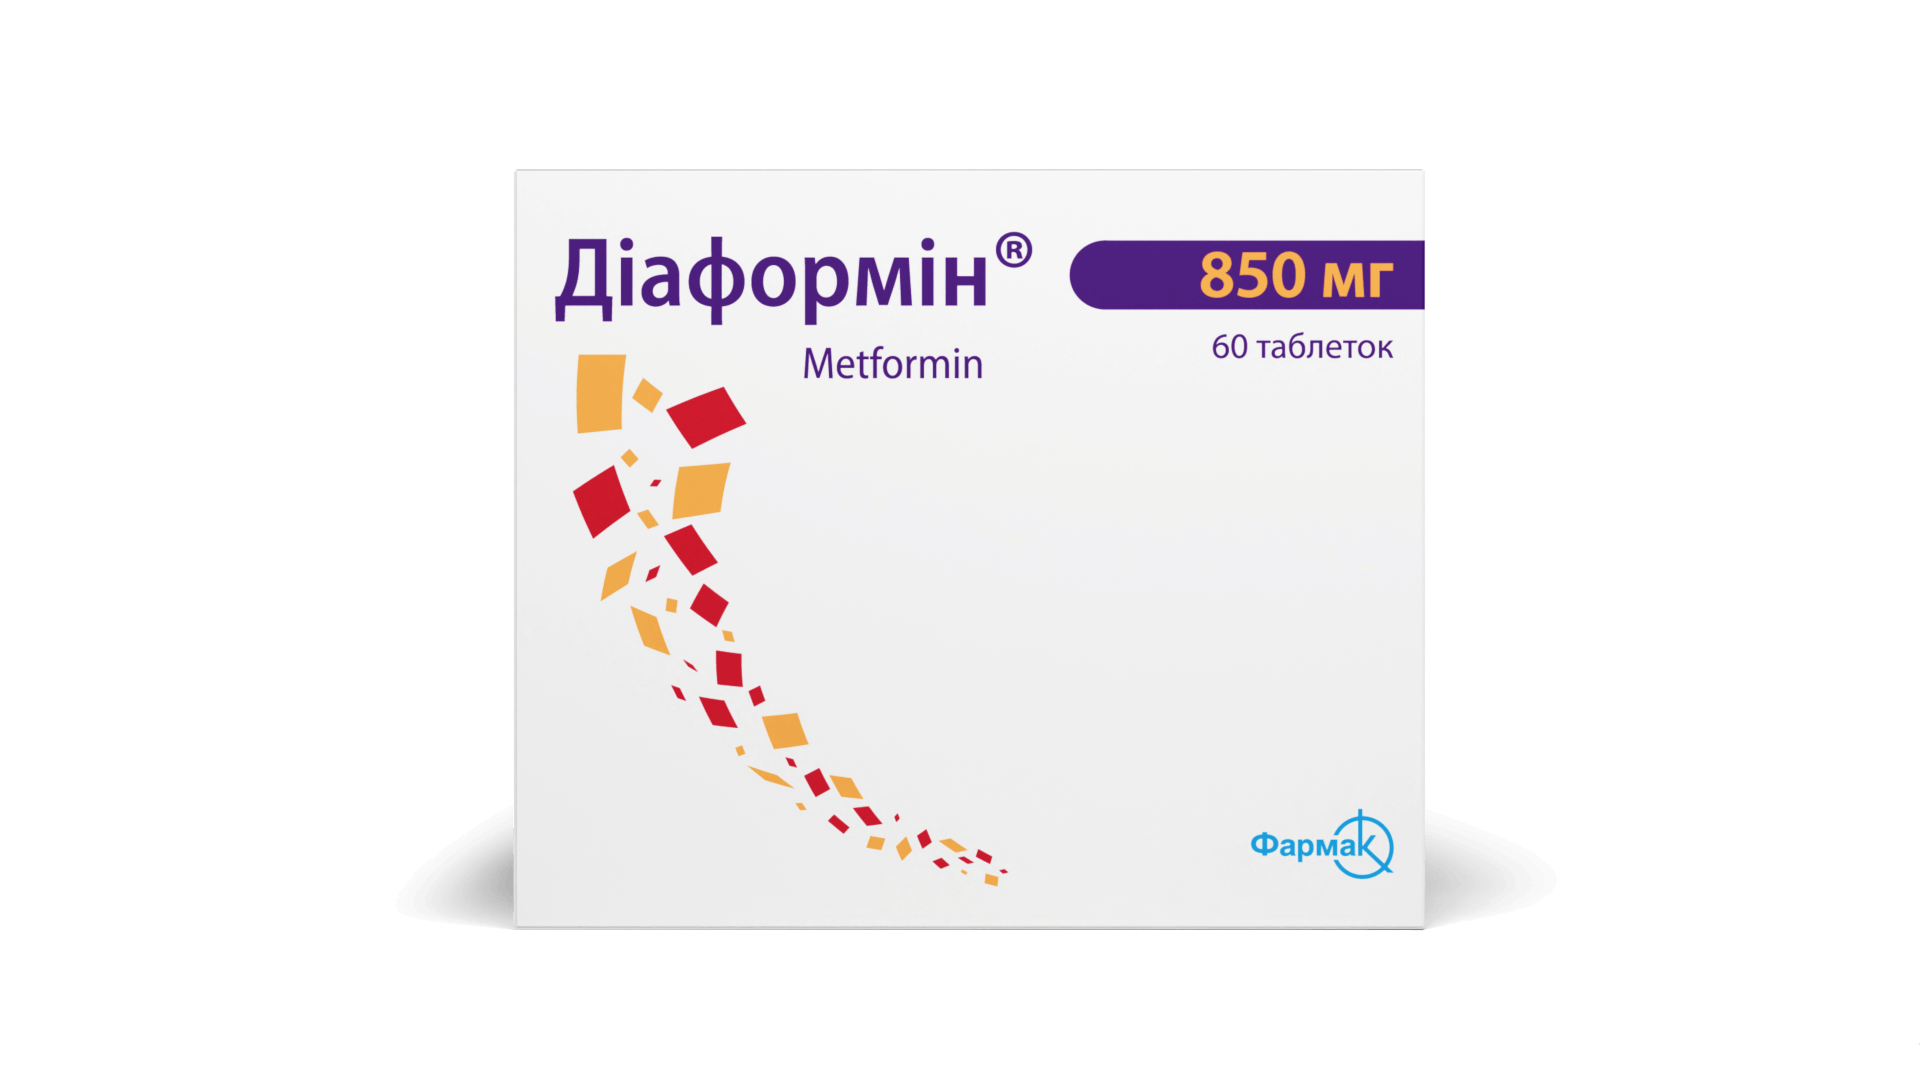 Диаформин® 850 мг (5)